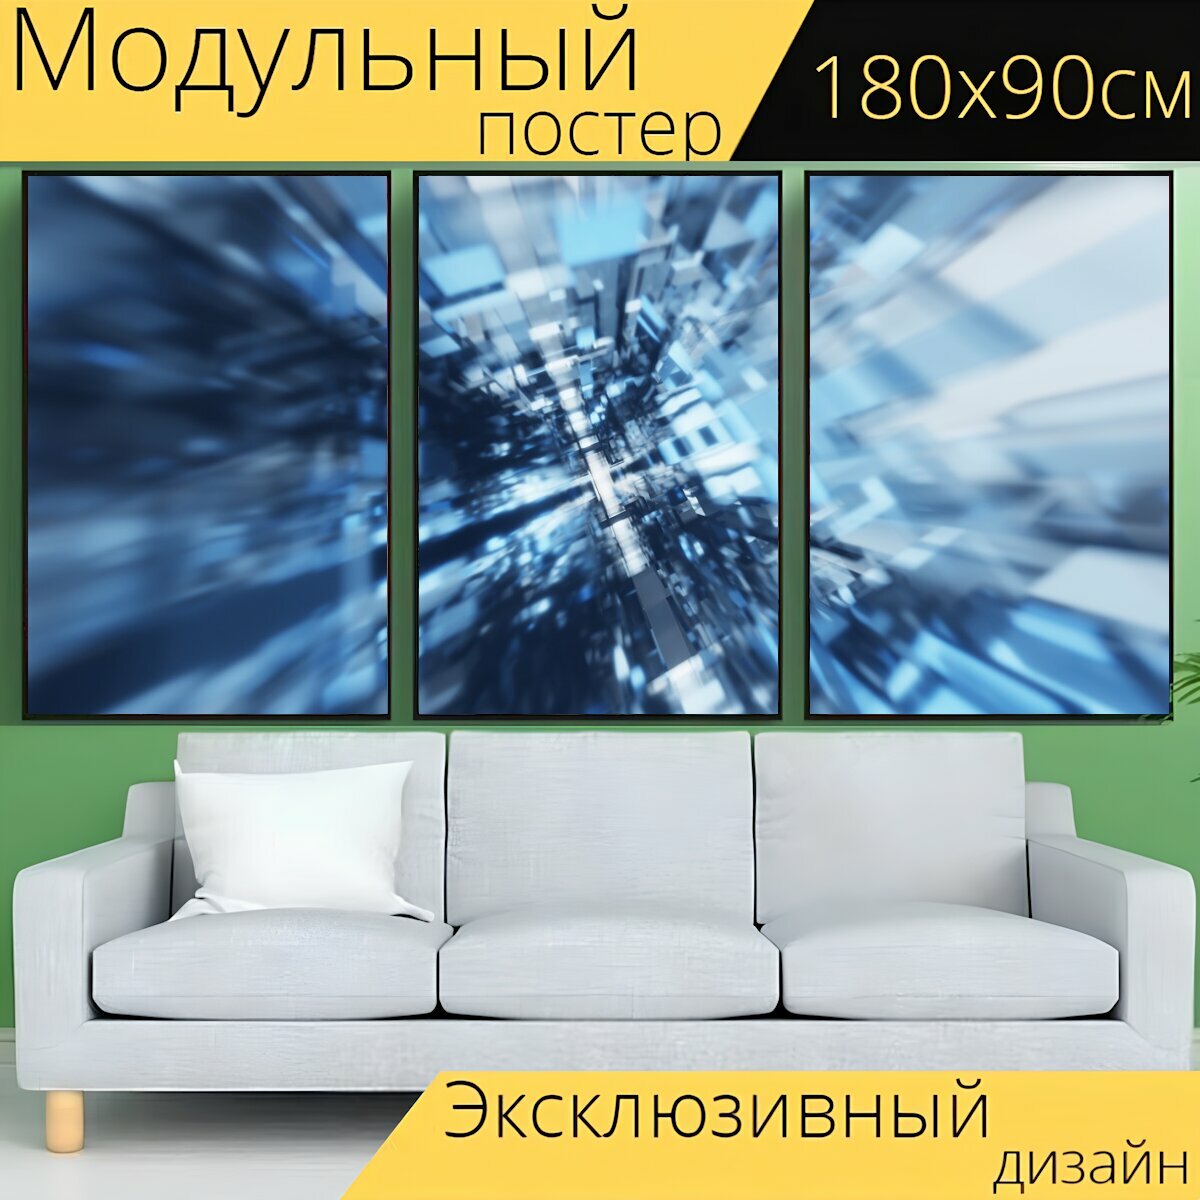 Модульный постер "Воксель технология современное" 180 x 90 см. для интерьера